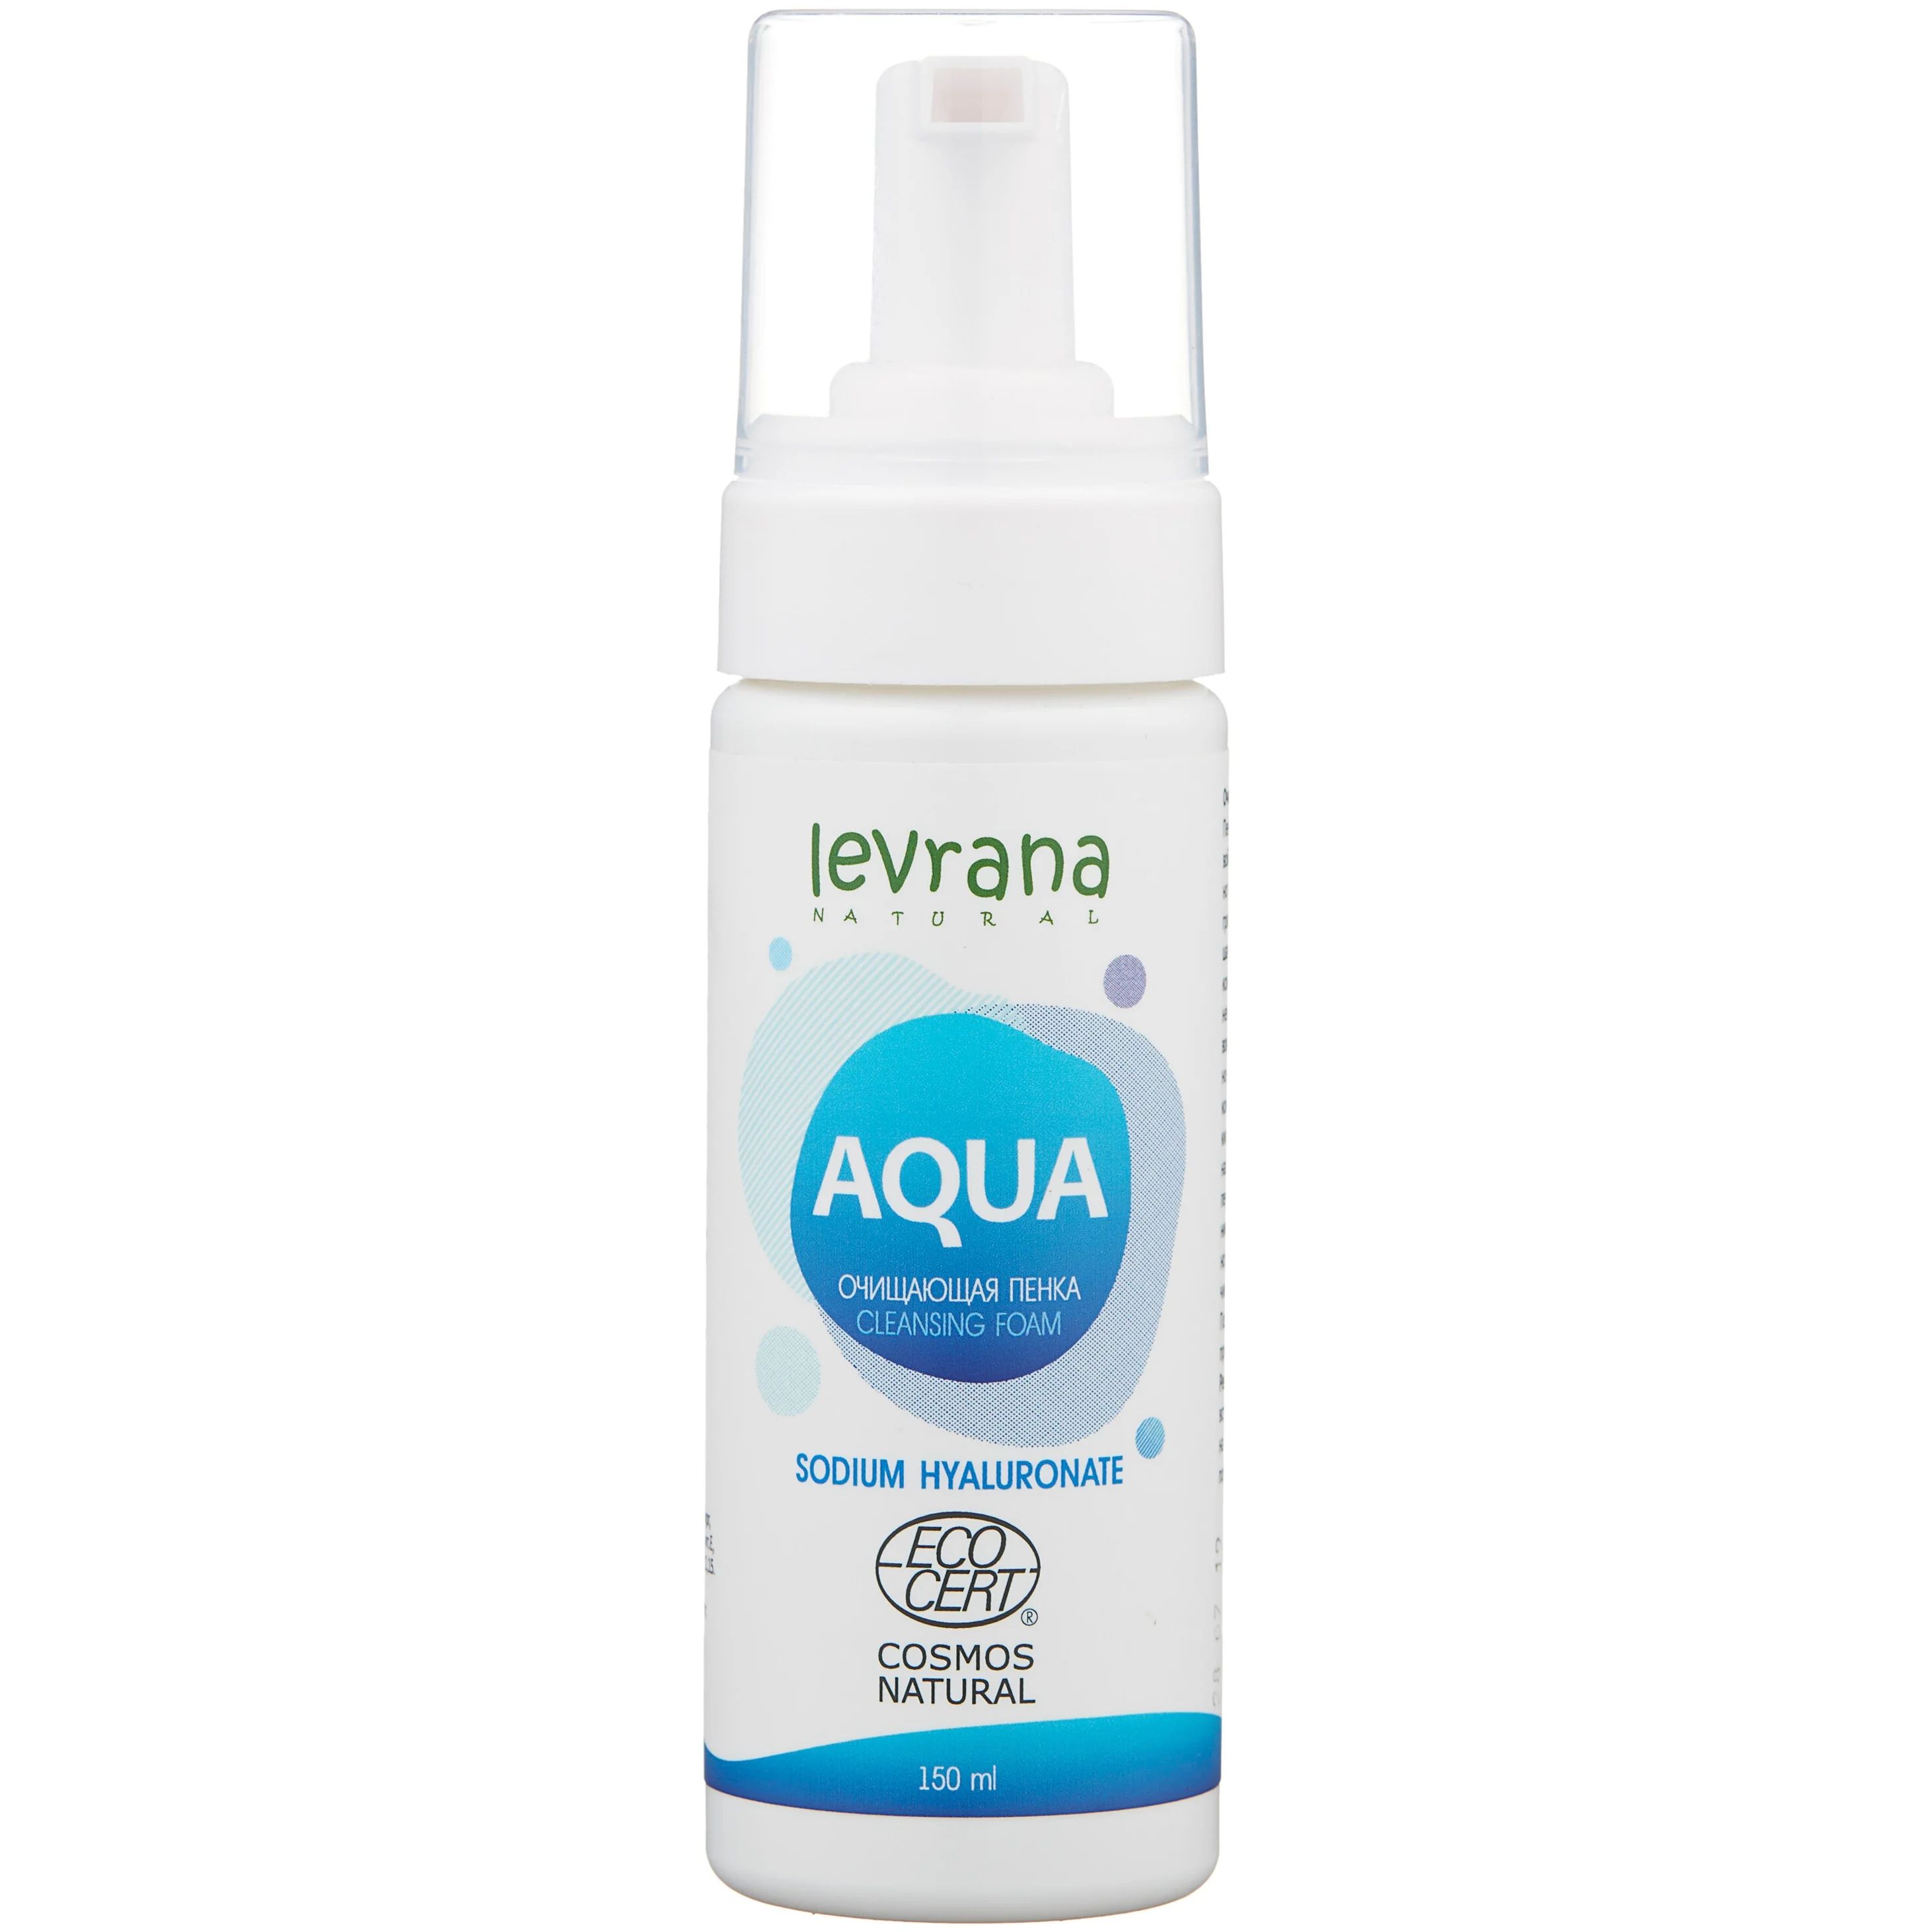 Пенка для умывания LEVRANA Aqua с гиалуроновой кислотой, увлажняющая, очищающая, 150 мл consly пенка увлажняющая с гиалуроновой кислотой для умывания 120 мл